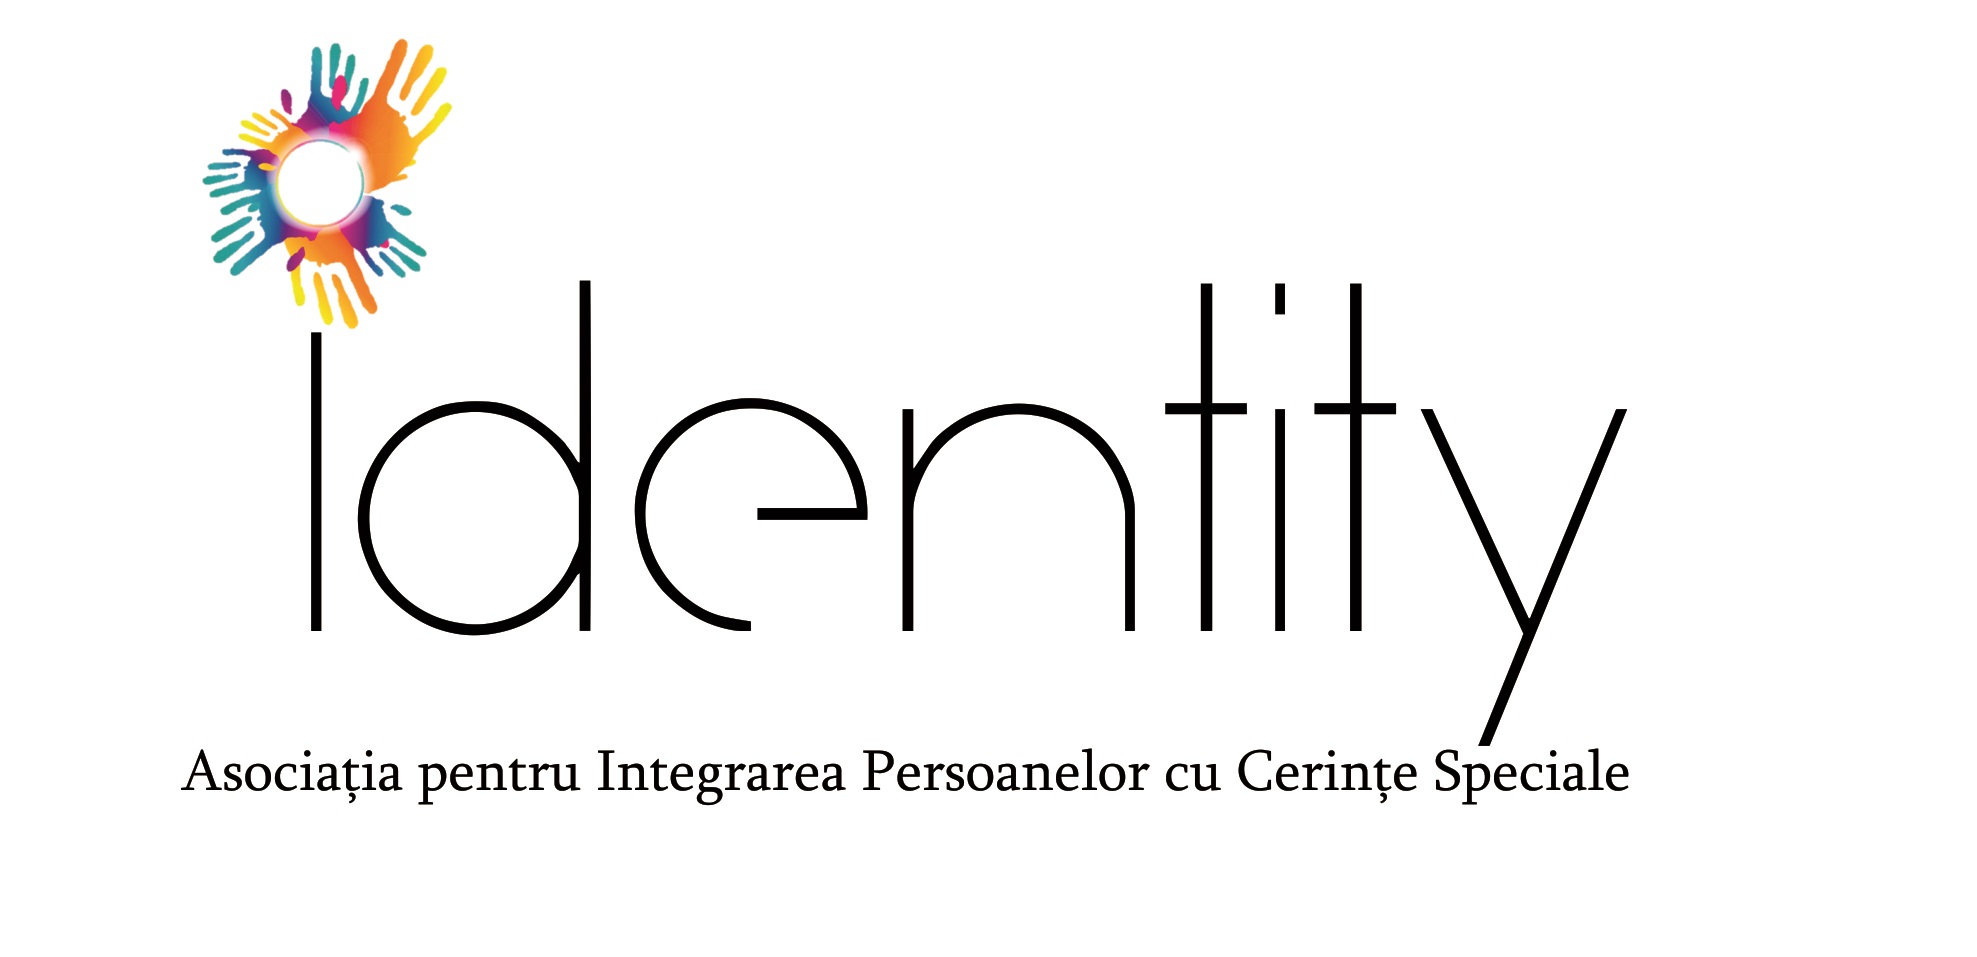 Asociatia Pentru Integrarea Persoanelor cu Cerinte Speciale Identity logo